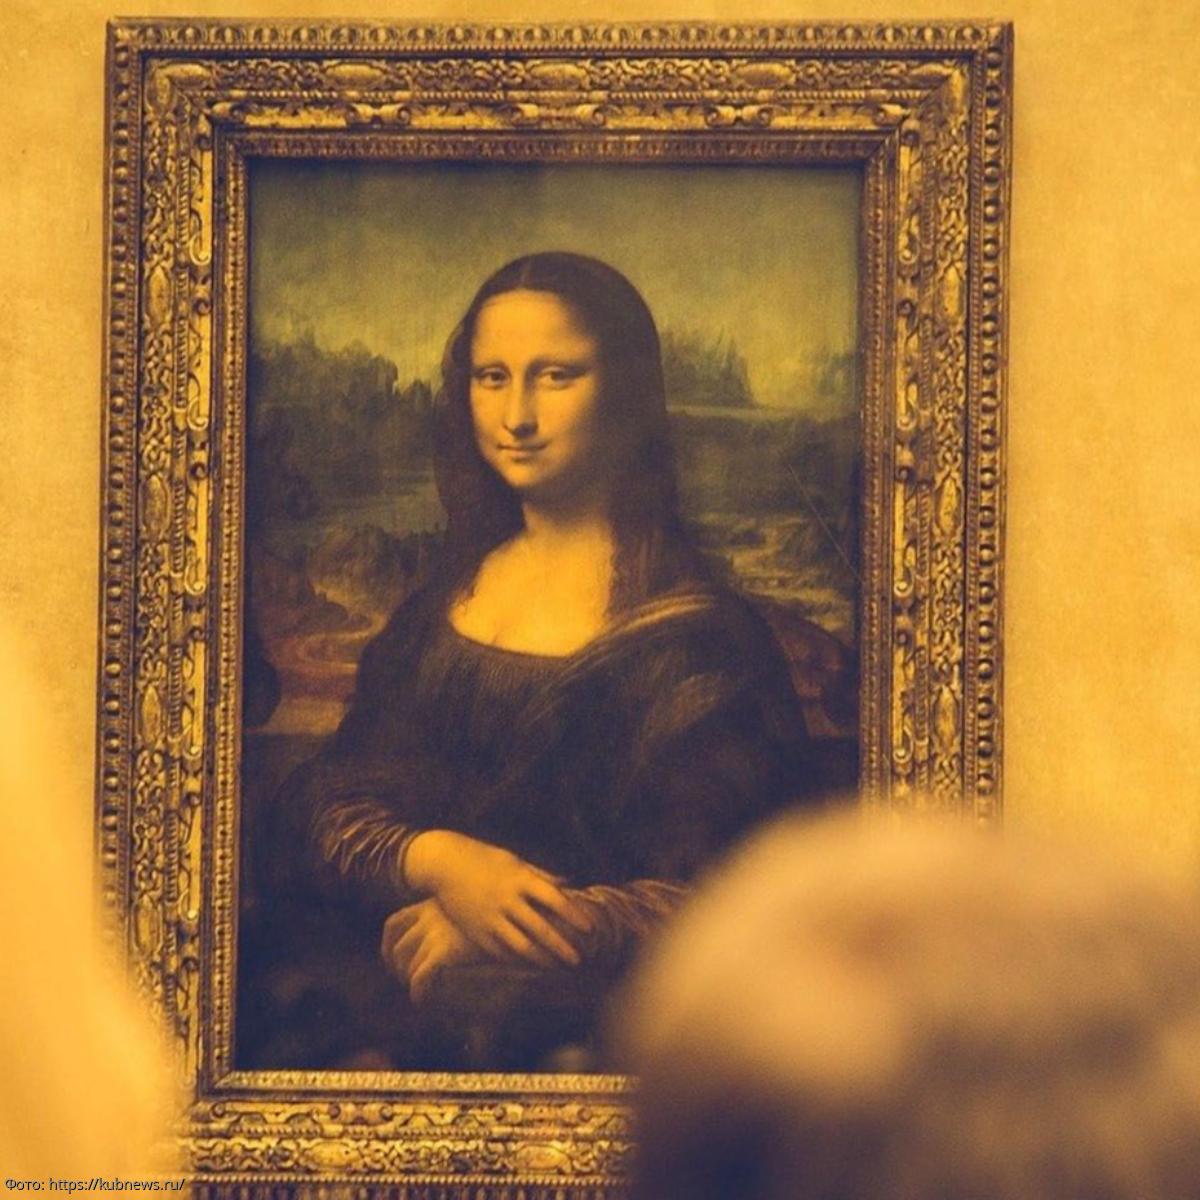 Жизненный код мастера Леонарда: что такое знаменитая улыбка Моны Лизы?